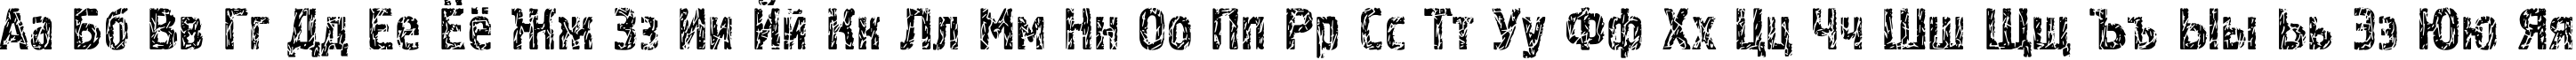 Пример написания русского алфавита шрифтом Pollock3C